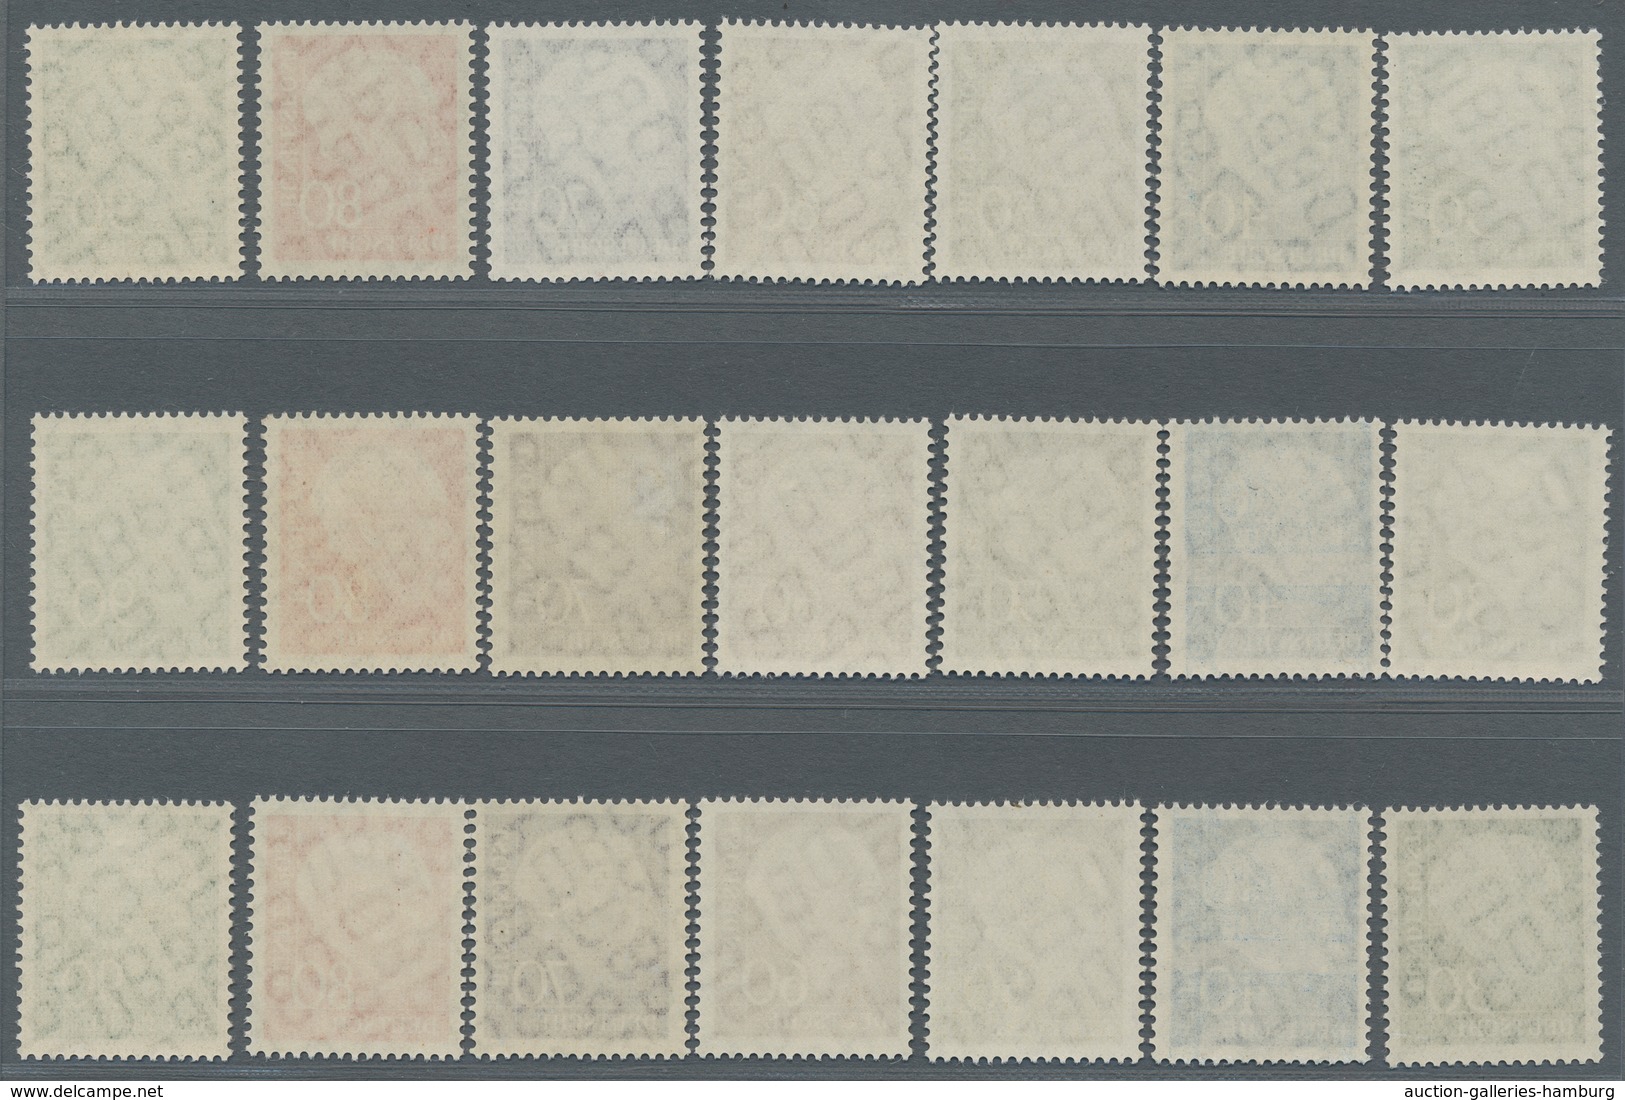 Bundesrepublik Deutschland: 1956, Heuss II, 11 kpl. postfrische Sätze, zusätzlich noch 9 mal Höchstw